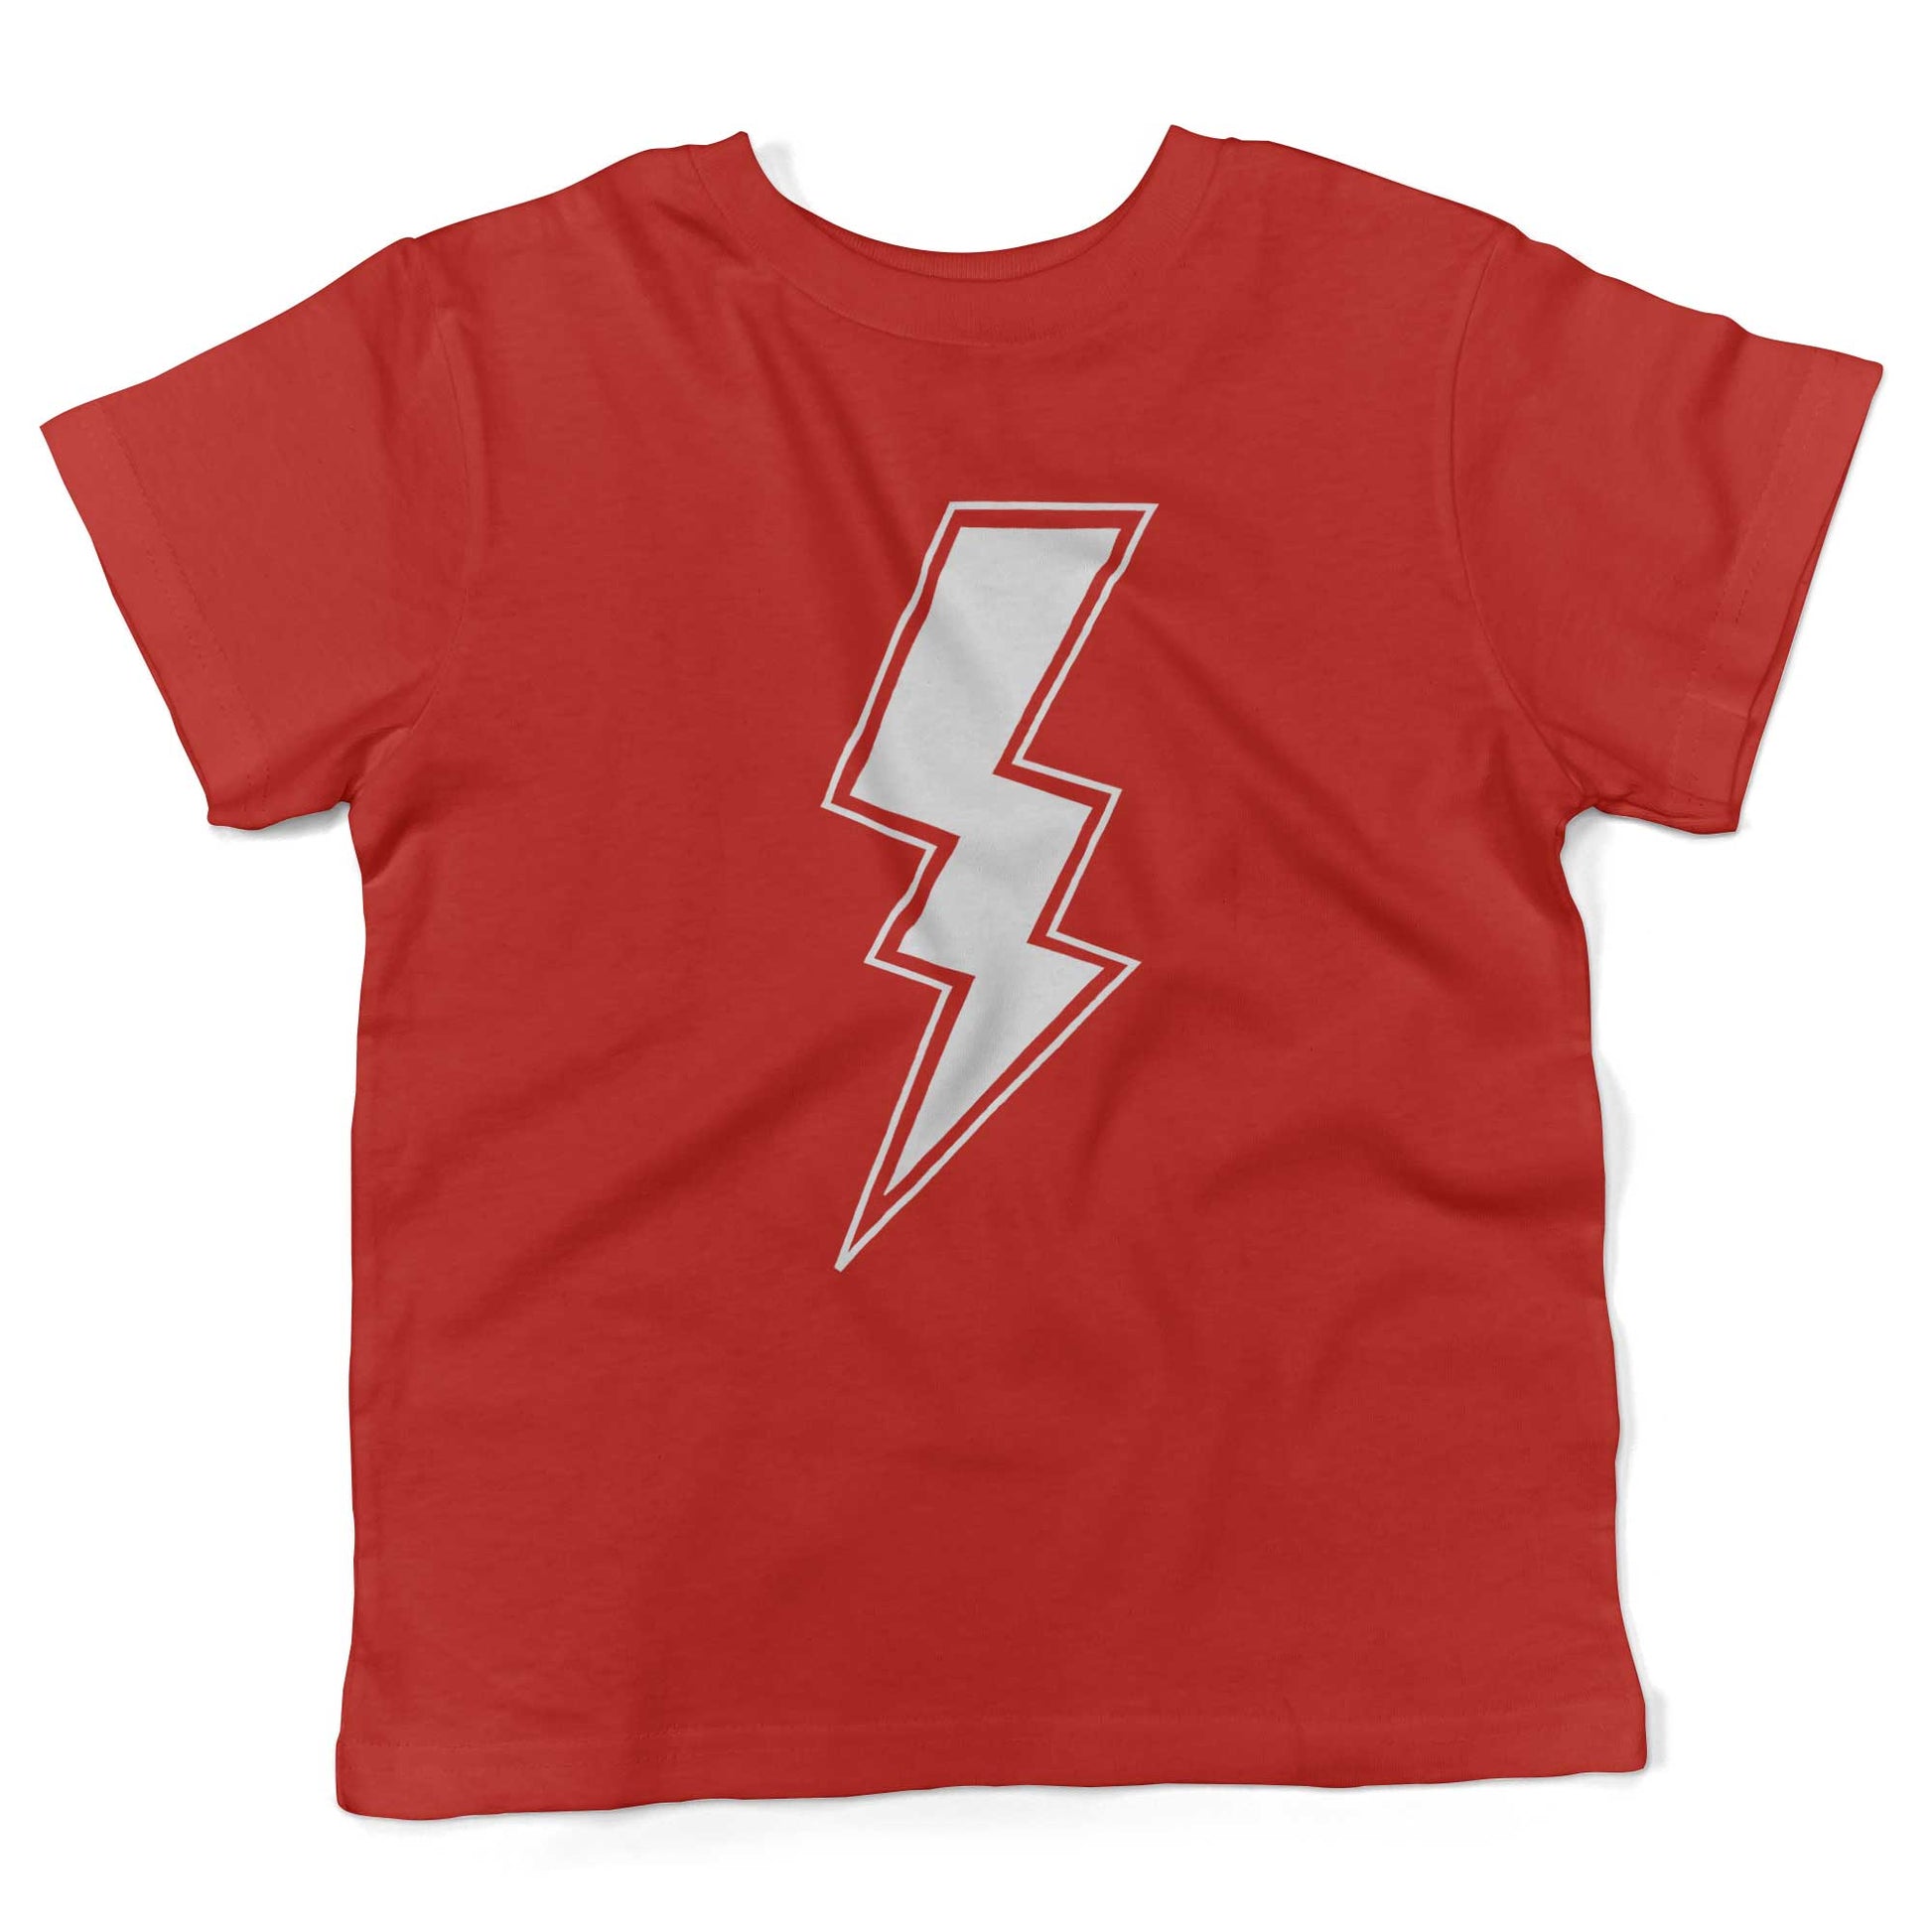 Giant Lightning Bolt Toddler Shirt-Red-2T